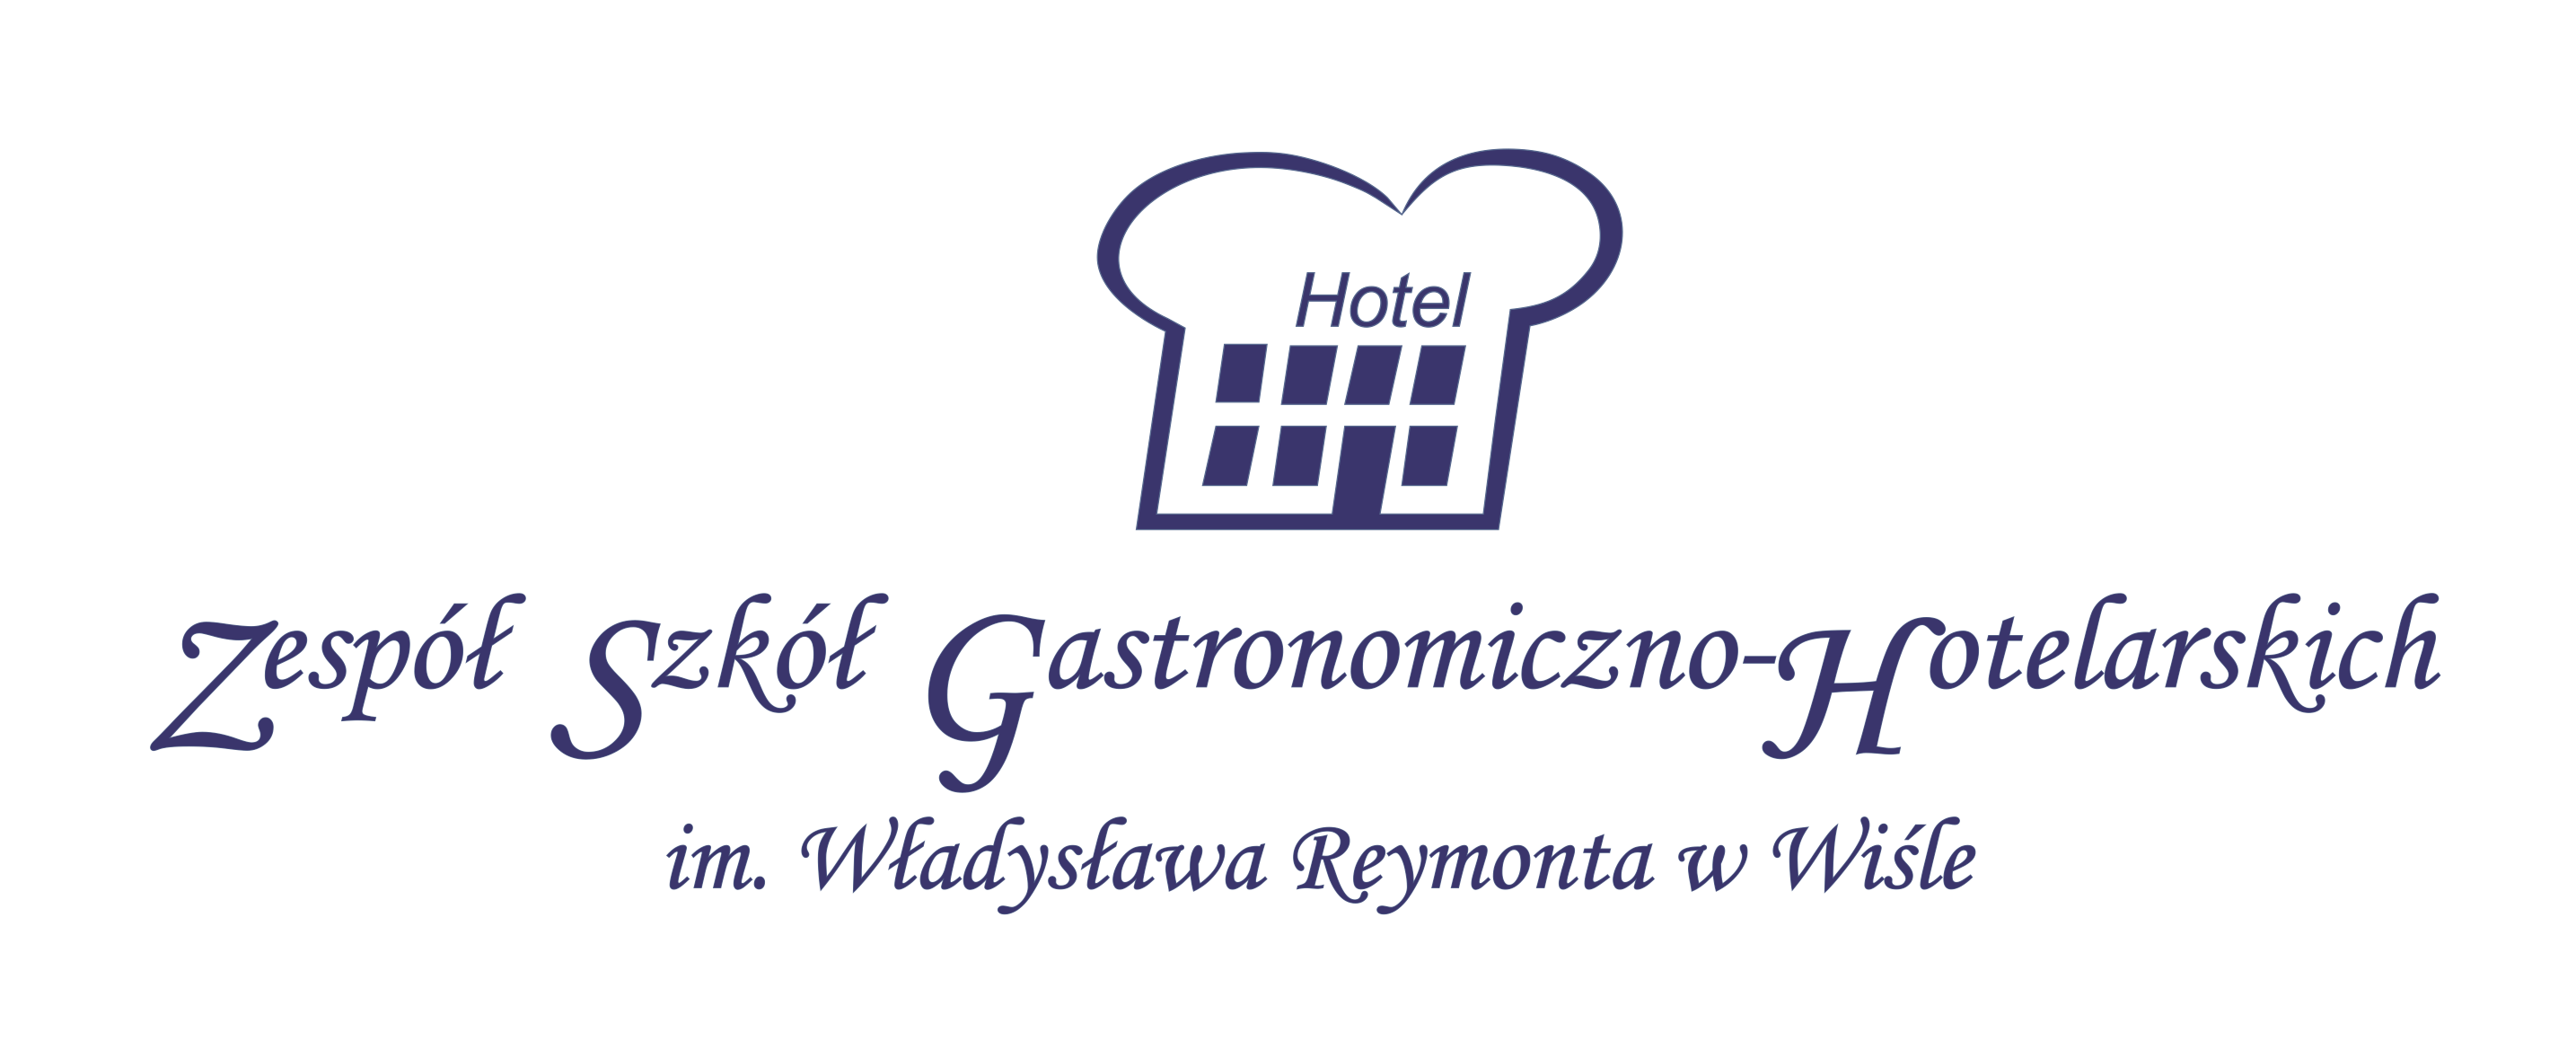 Zespół Szkół Gastronomiczno-Hotelarskich im. Władysława Reymonta w Wiśle